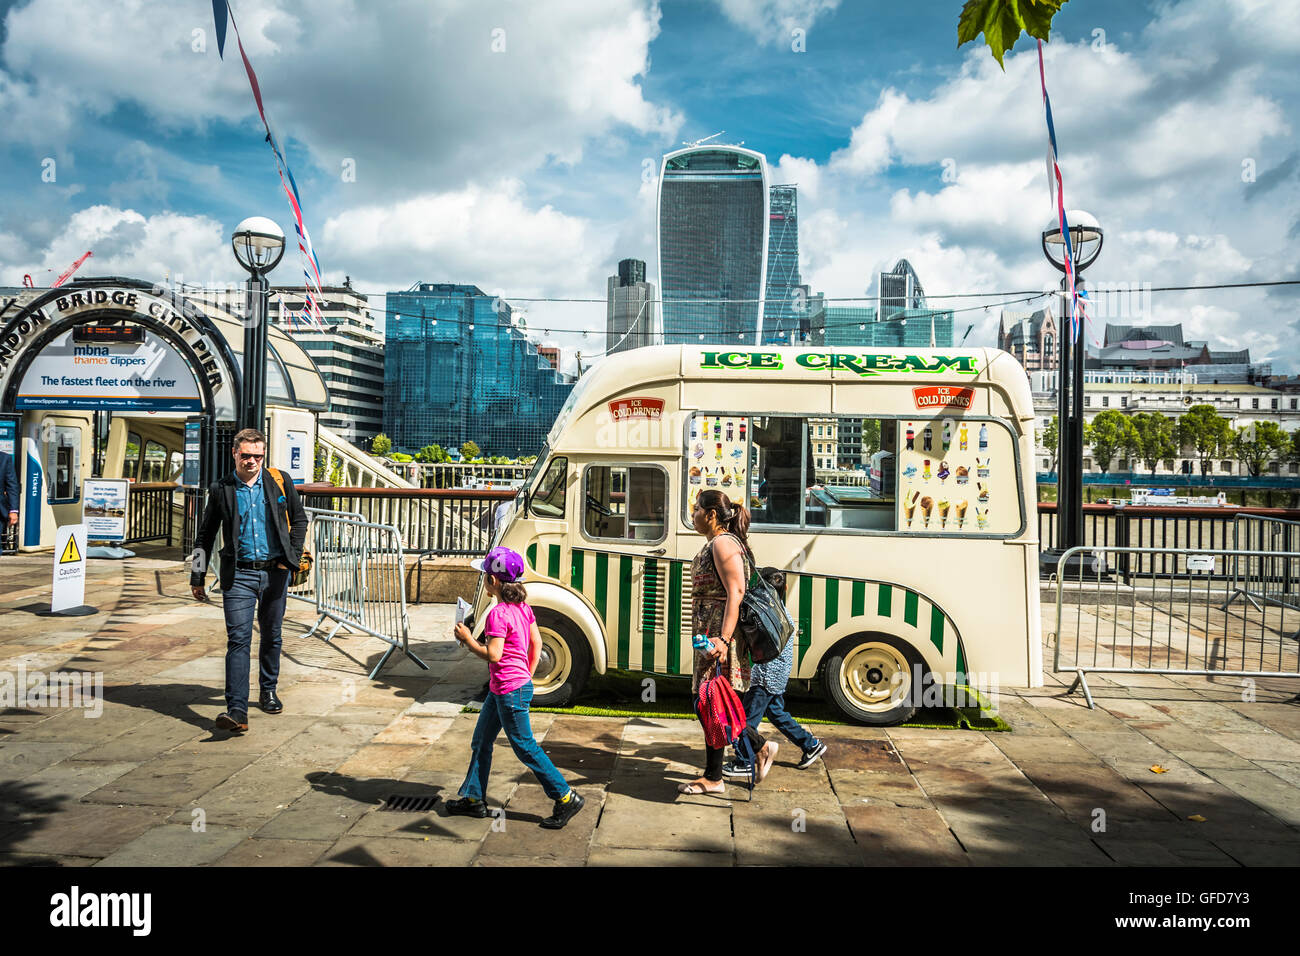 Un furgone del gelato dall'aspetto vintage di fronte al London Bridge City Pier con l'edificio Walkie Talkie nella City di Londra sullo sfondo. Foto Stock